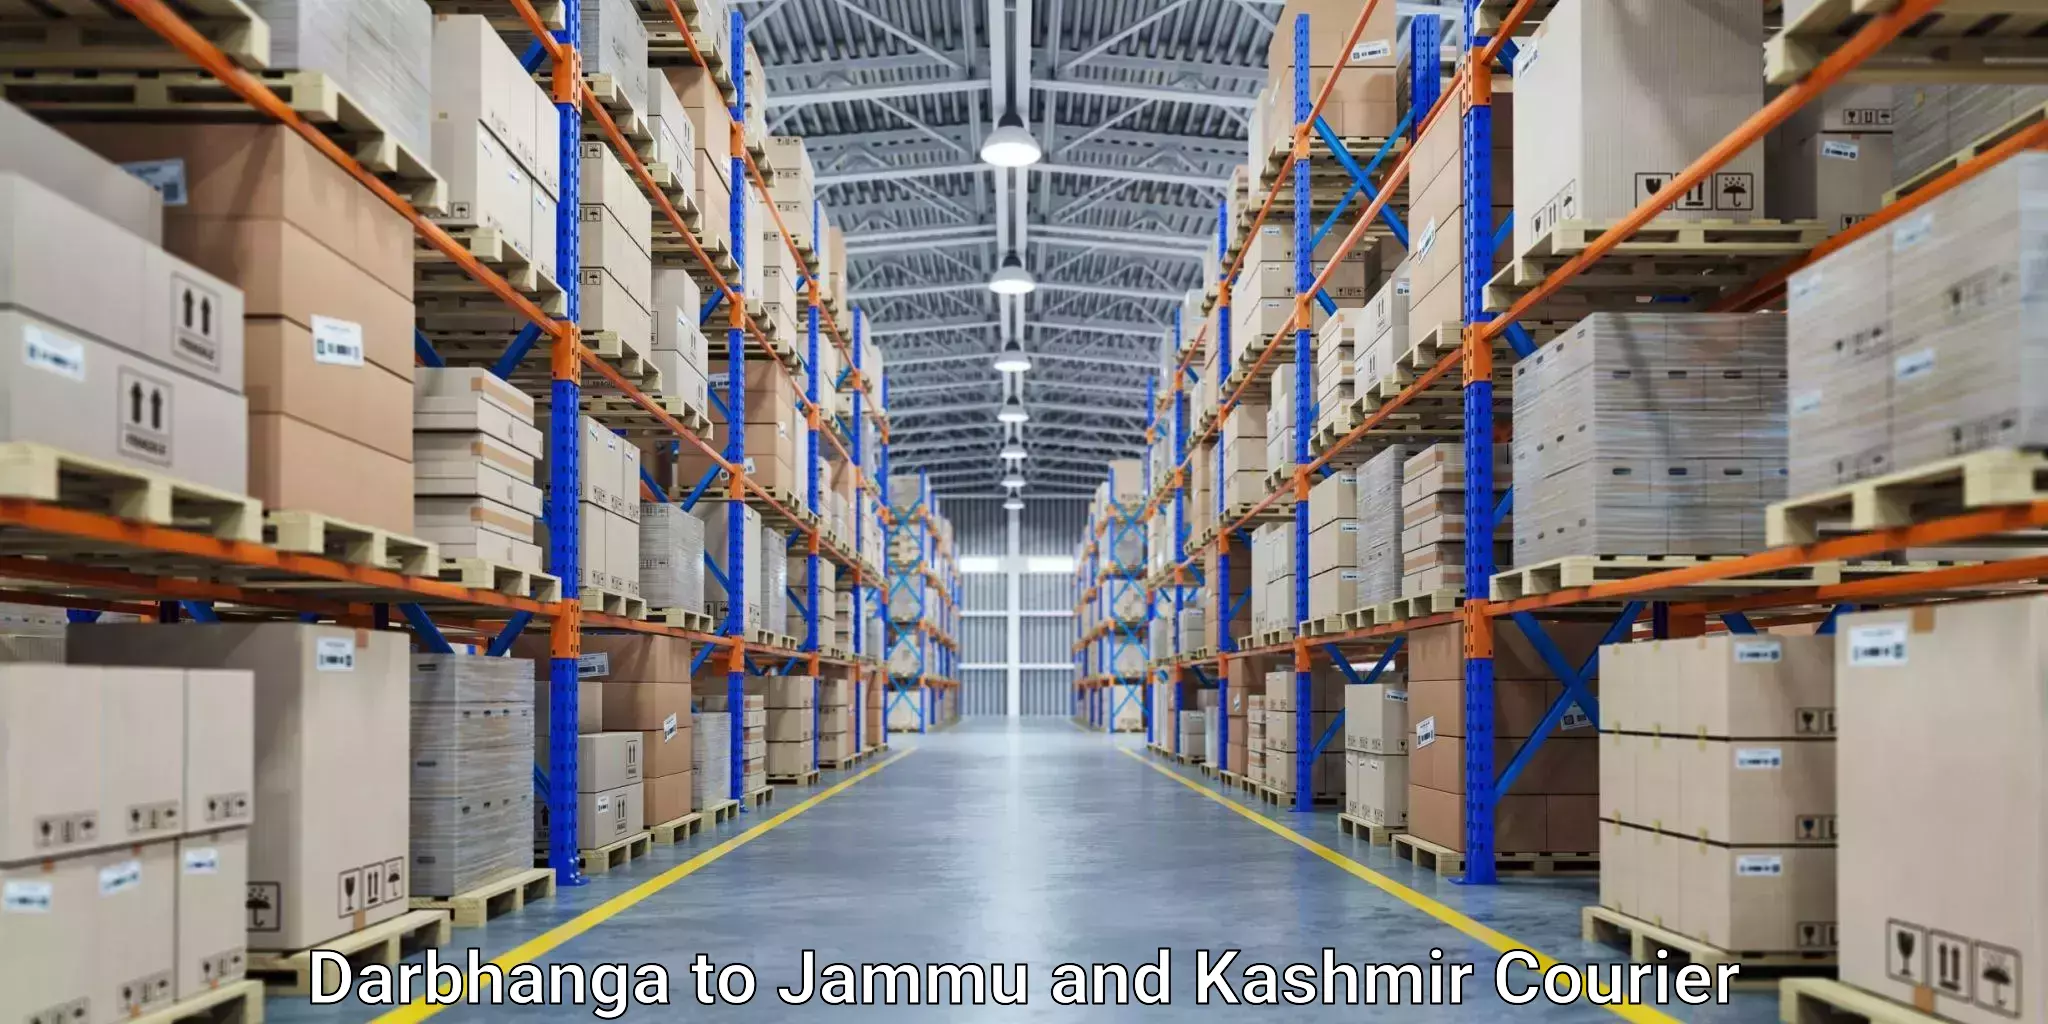 Budget-friendly shipping Darbhanga to Shopian